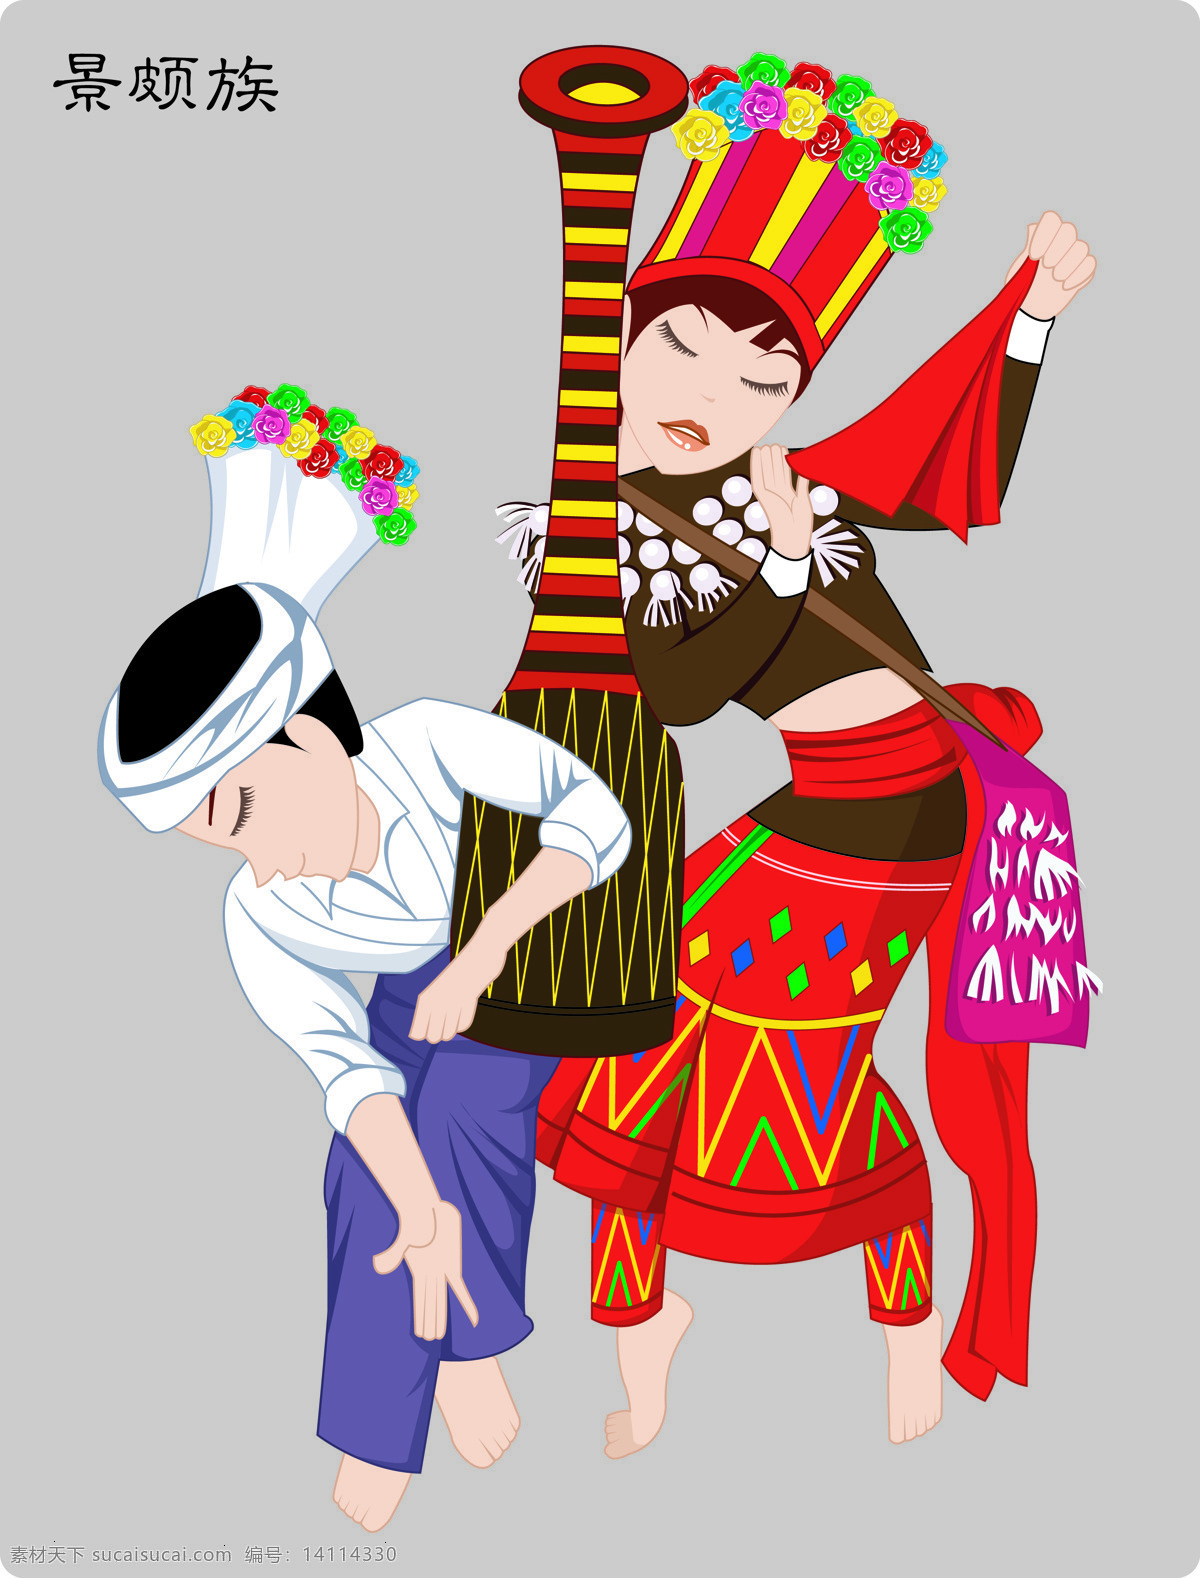 少数民族 景颇族 民族文化 民族 56个民族 文化艺术 传统文化